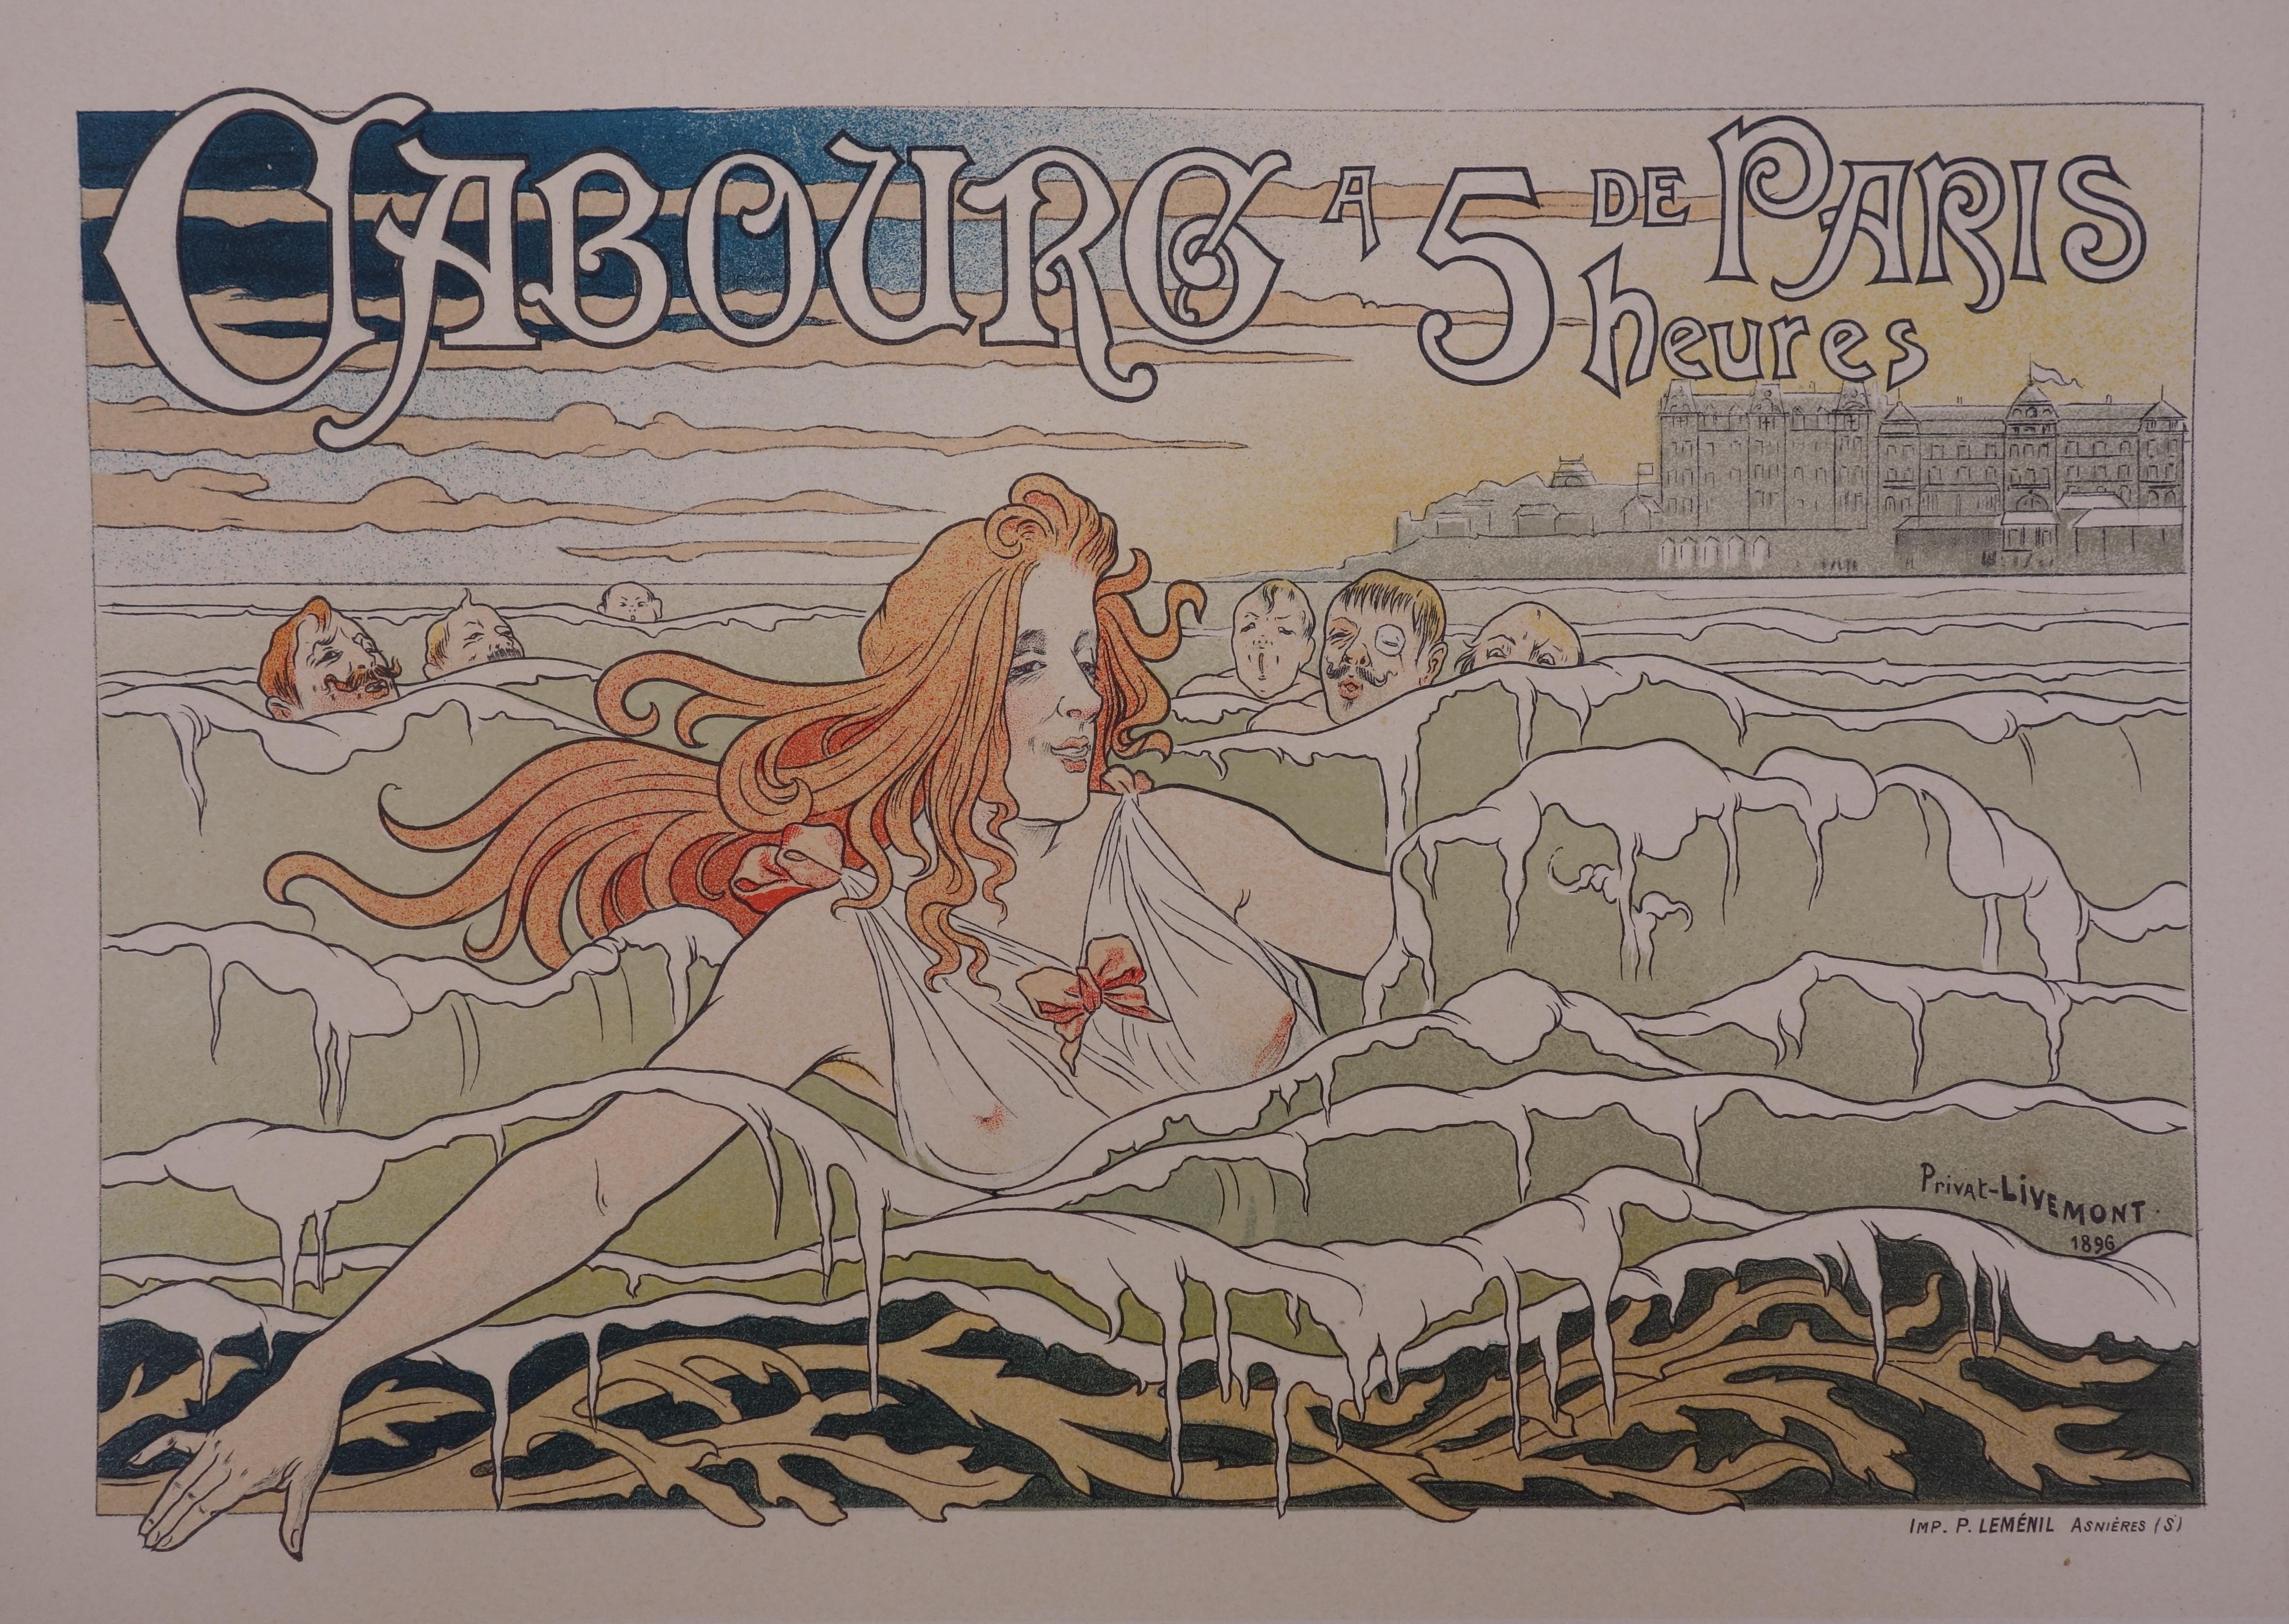 Normandie, Cabourg - Lithographie (Les Matres de l'Affiche), Imprimerie Chaix 1897 - Print de Henri PRIVAT-LIVEMONT